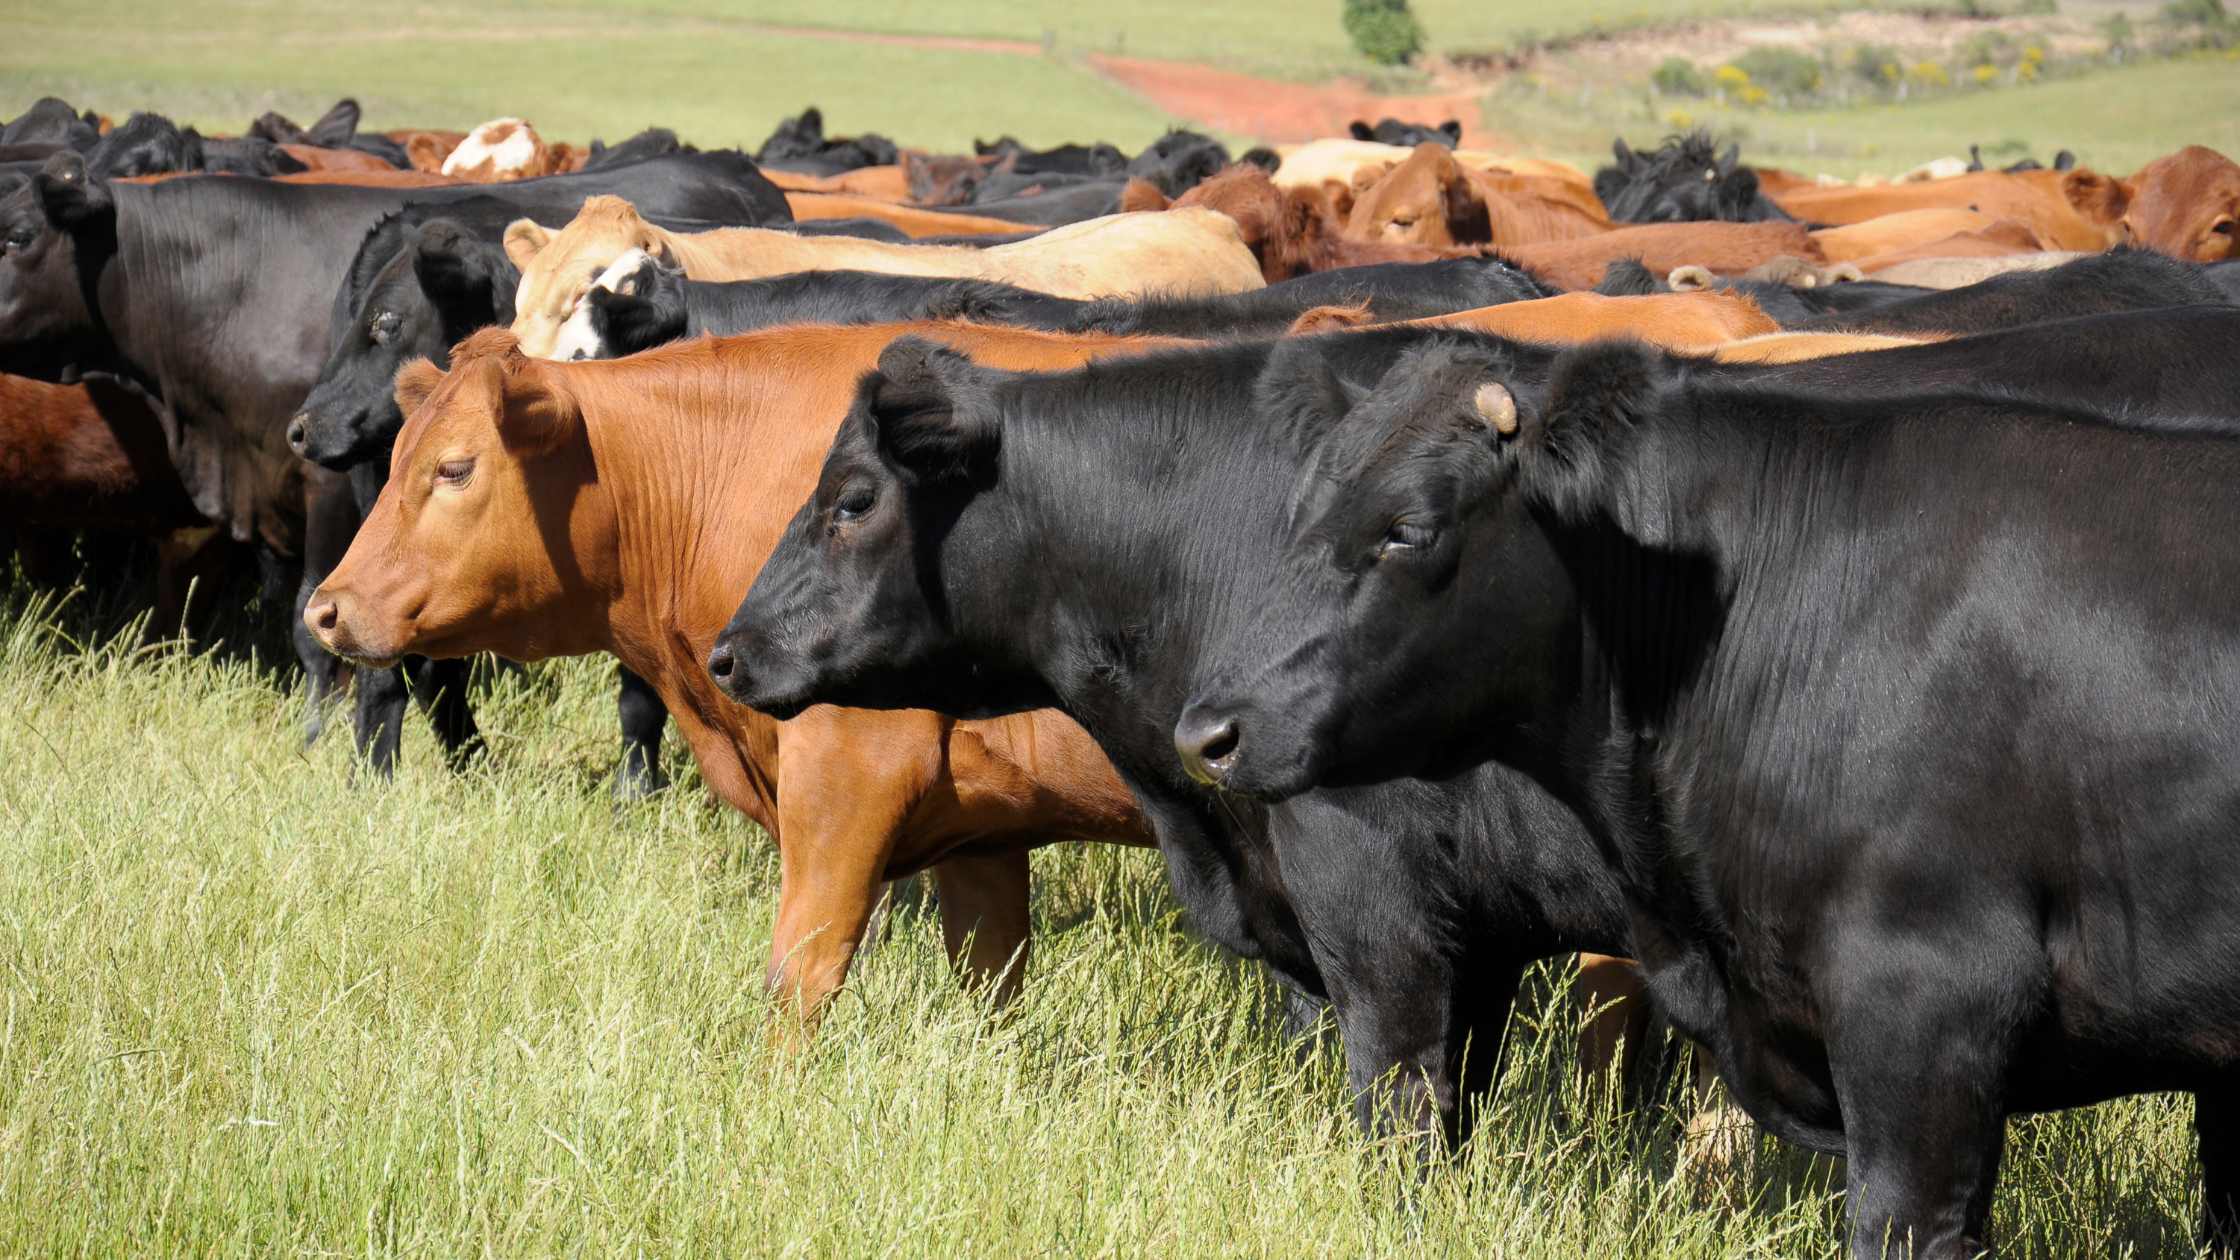 Cattle grazing on a grass field.